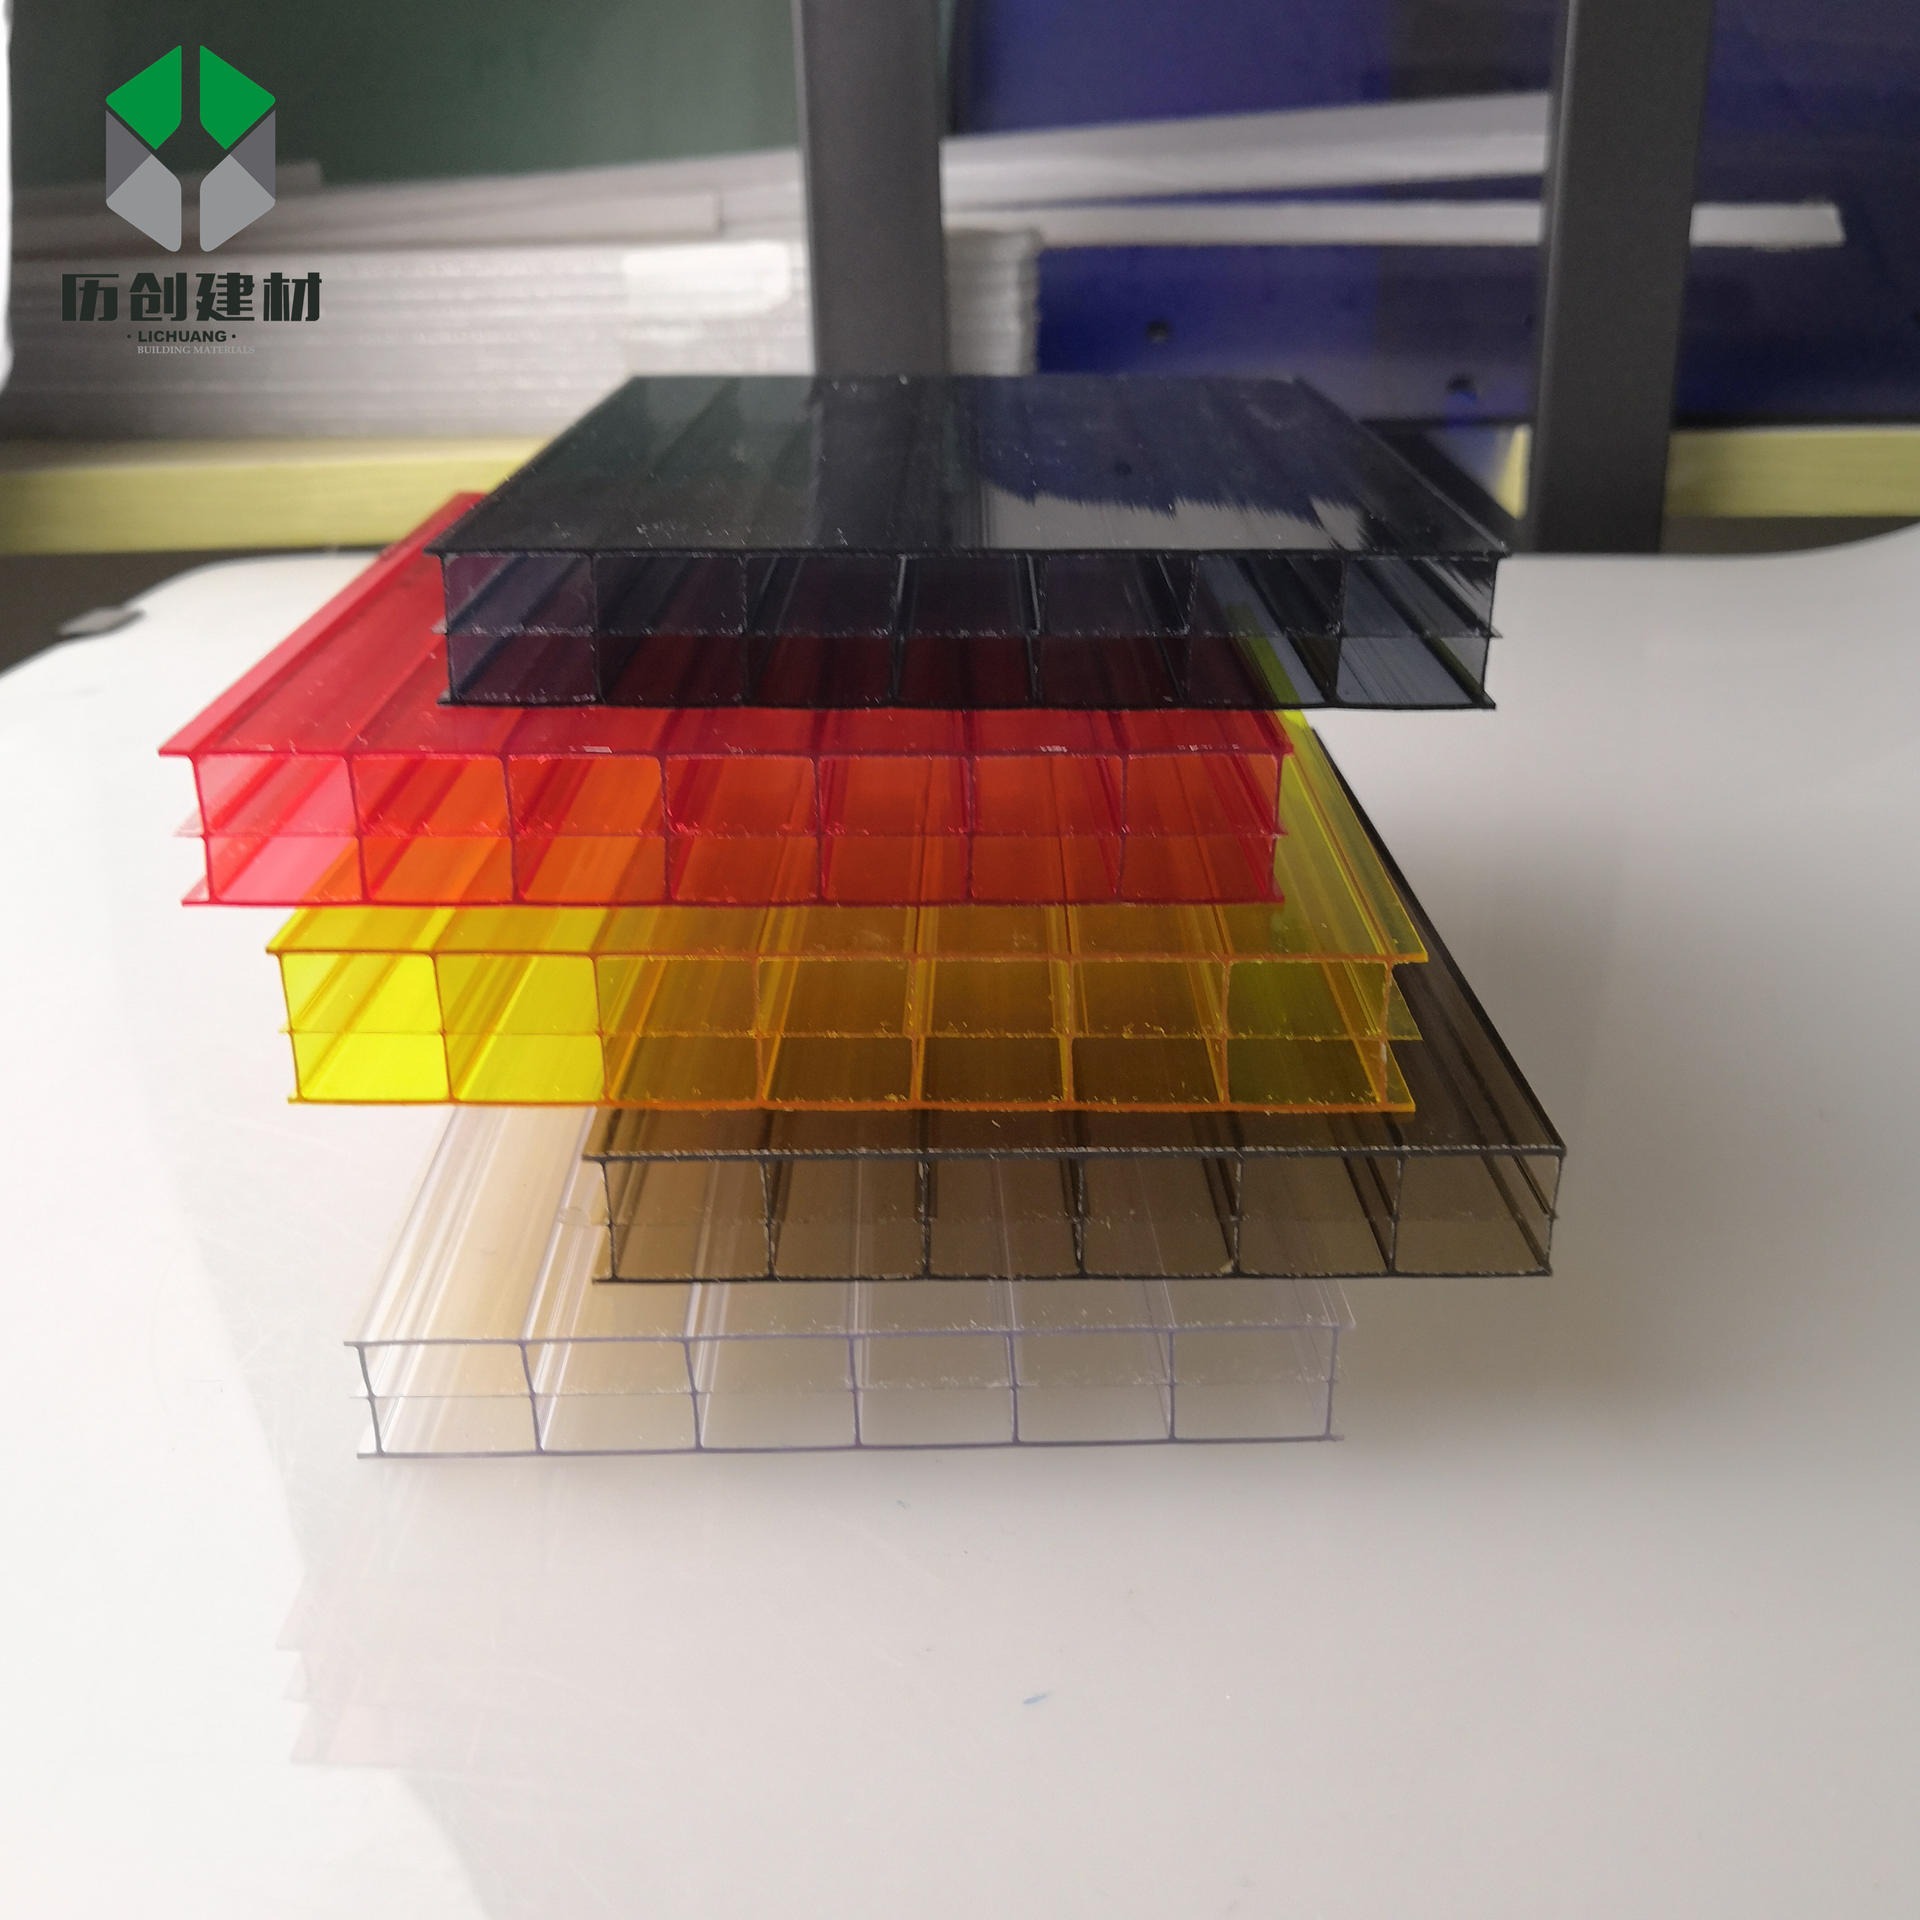 订制生产pc聚碳酸酯阳光板 6mm三层透明板材防腐蚀亮面塑料板广东厂家直供图片